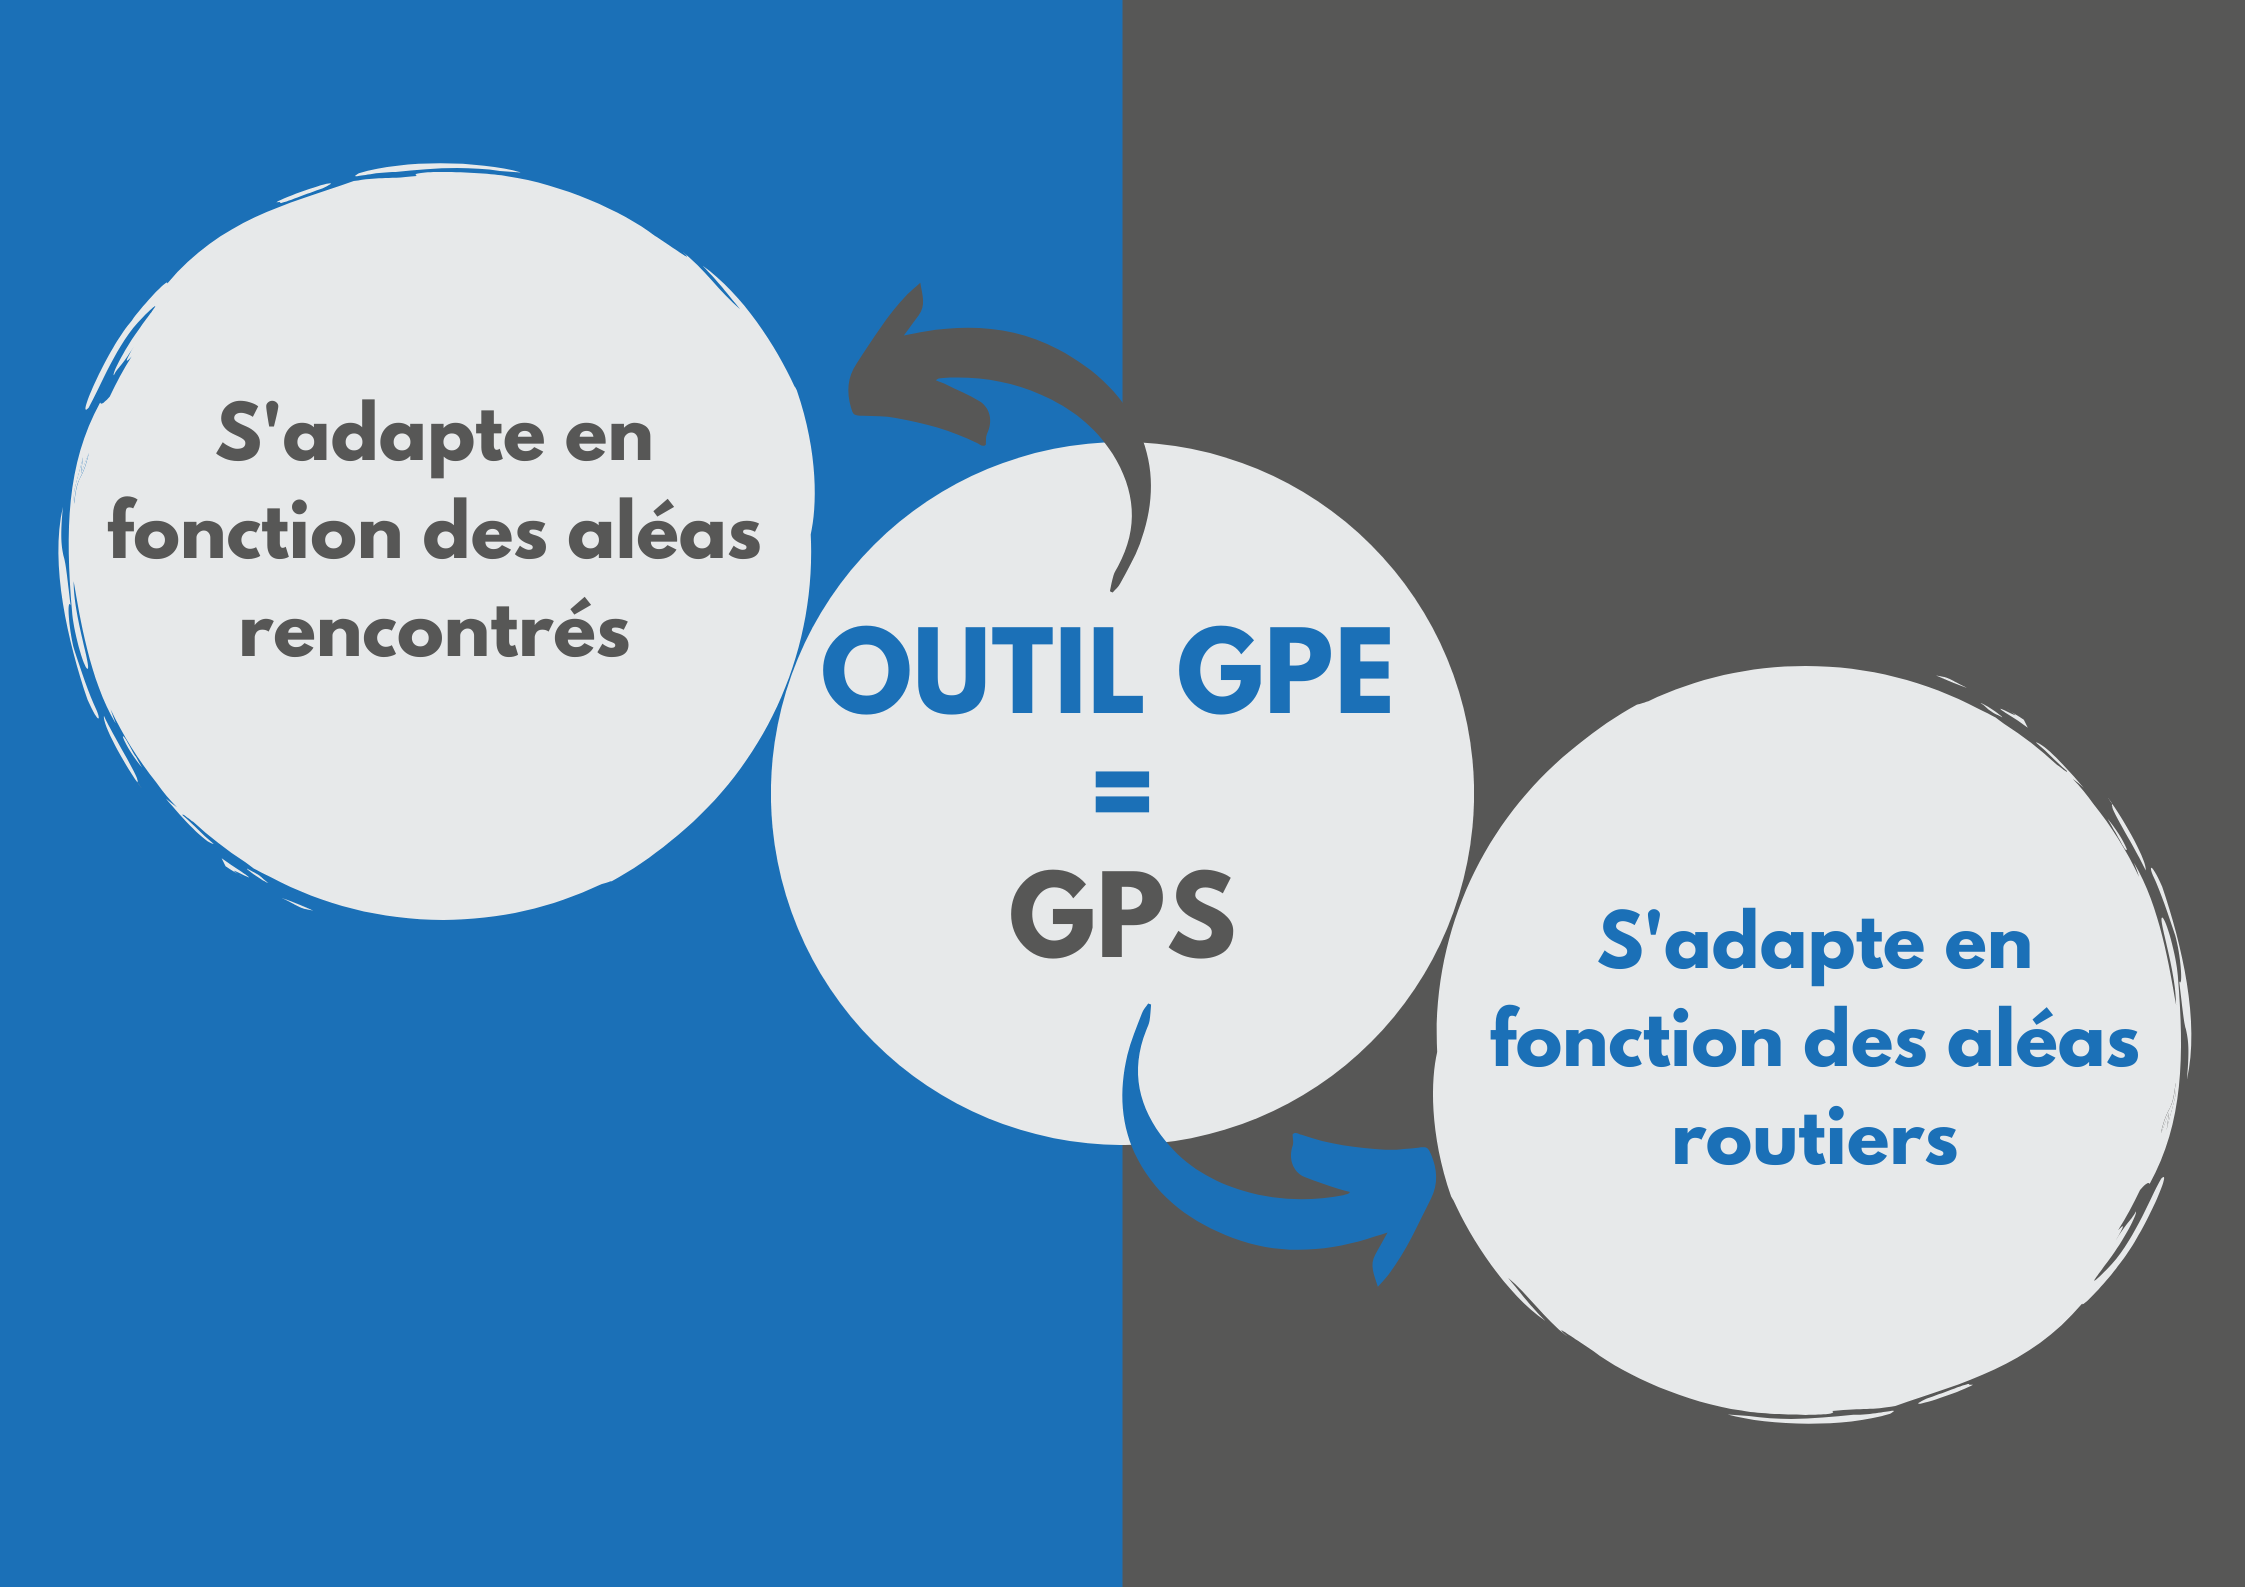 Le GPE s’adapte en fonction des aléas rencontrés comme le GPS s’adapte en fonction des aléas routiers.